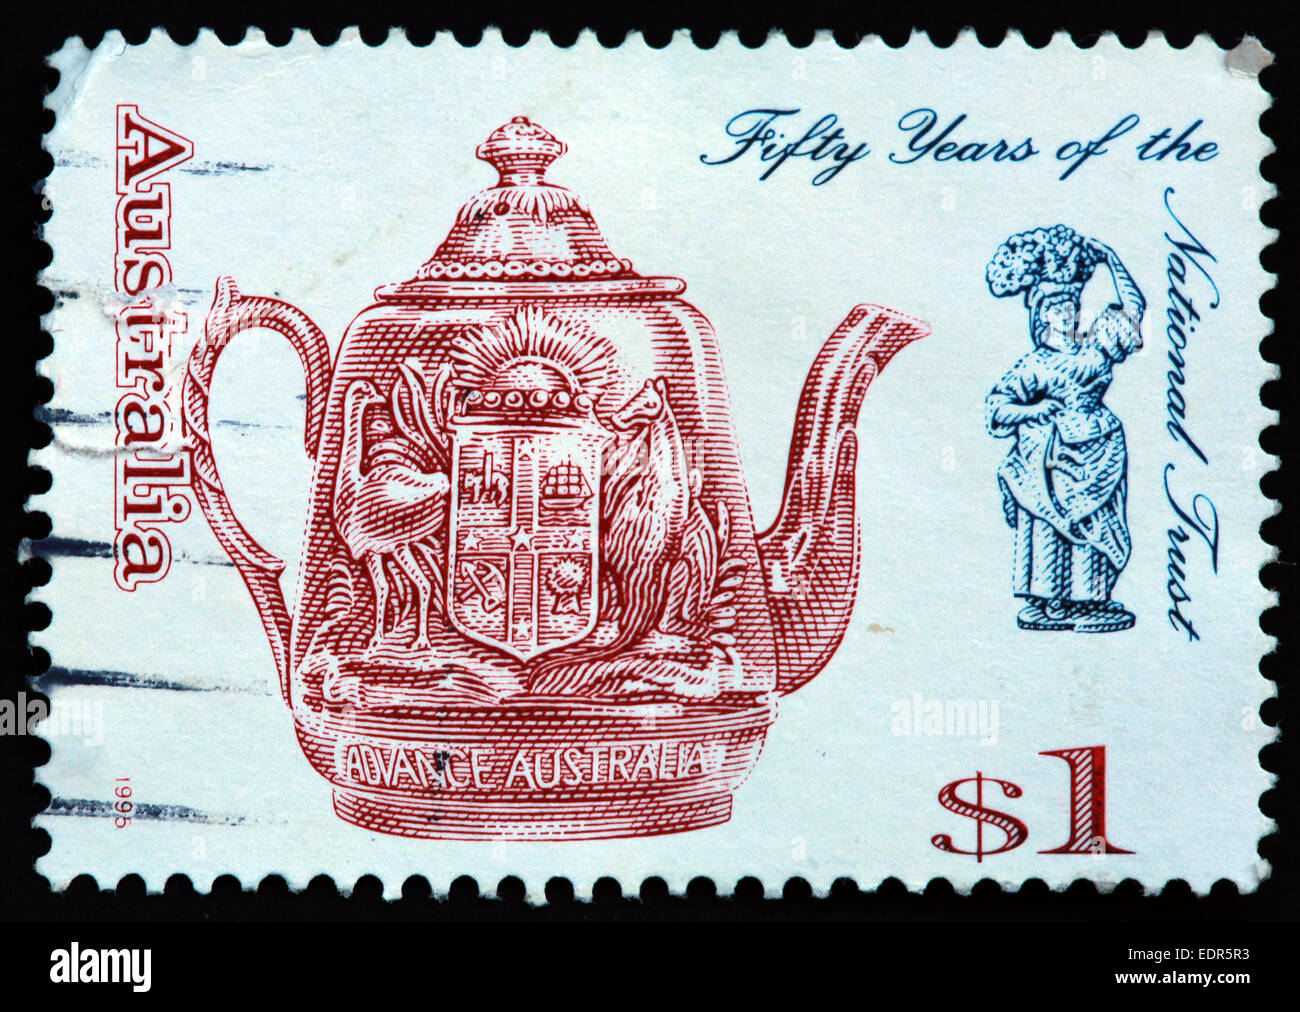 Utilisé et oblitérée Australie / Austrailian Stamp $1 1995 cinquante 50 ans sof le national trust à l'avance l'Australie Banque D'Images